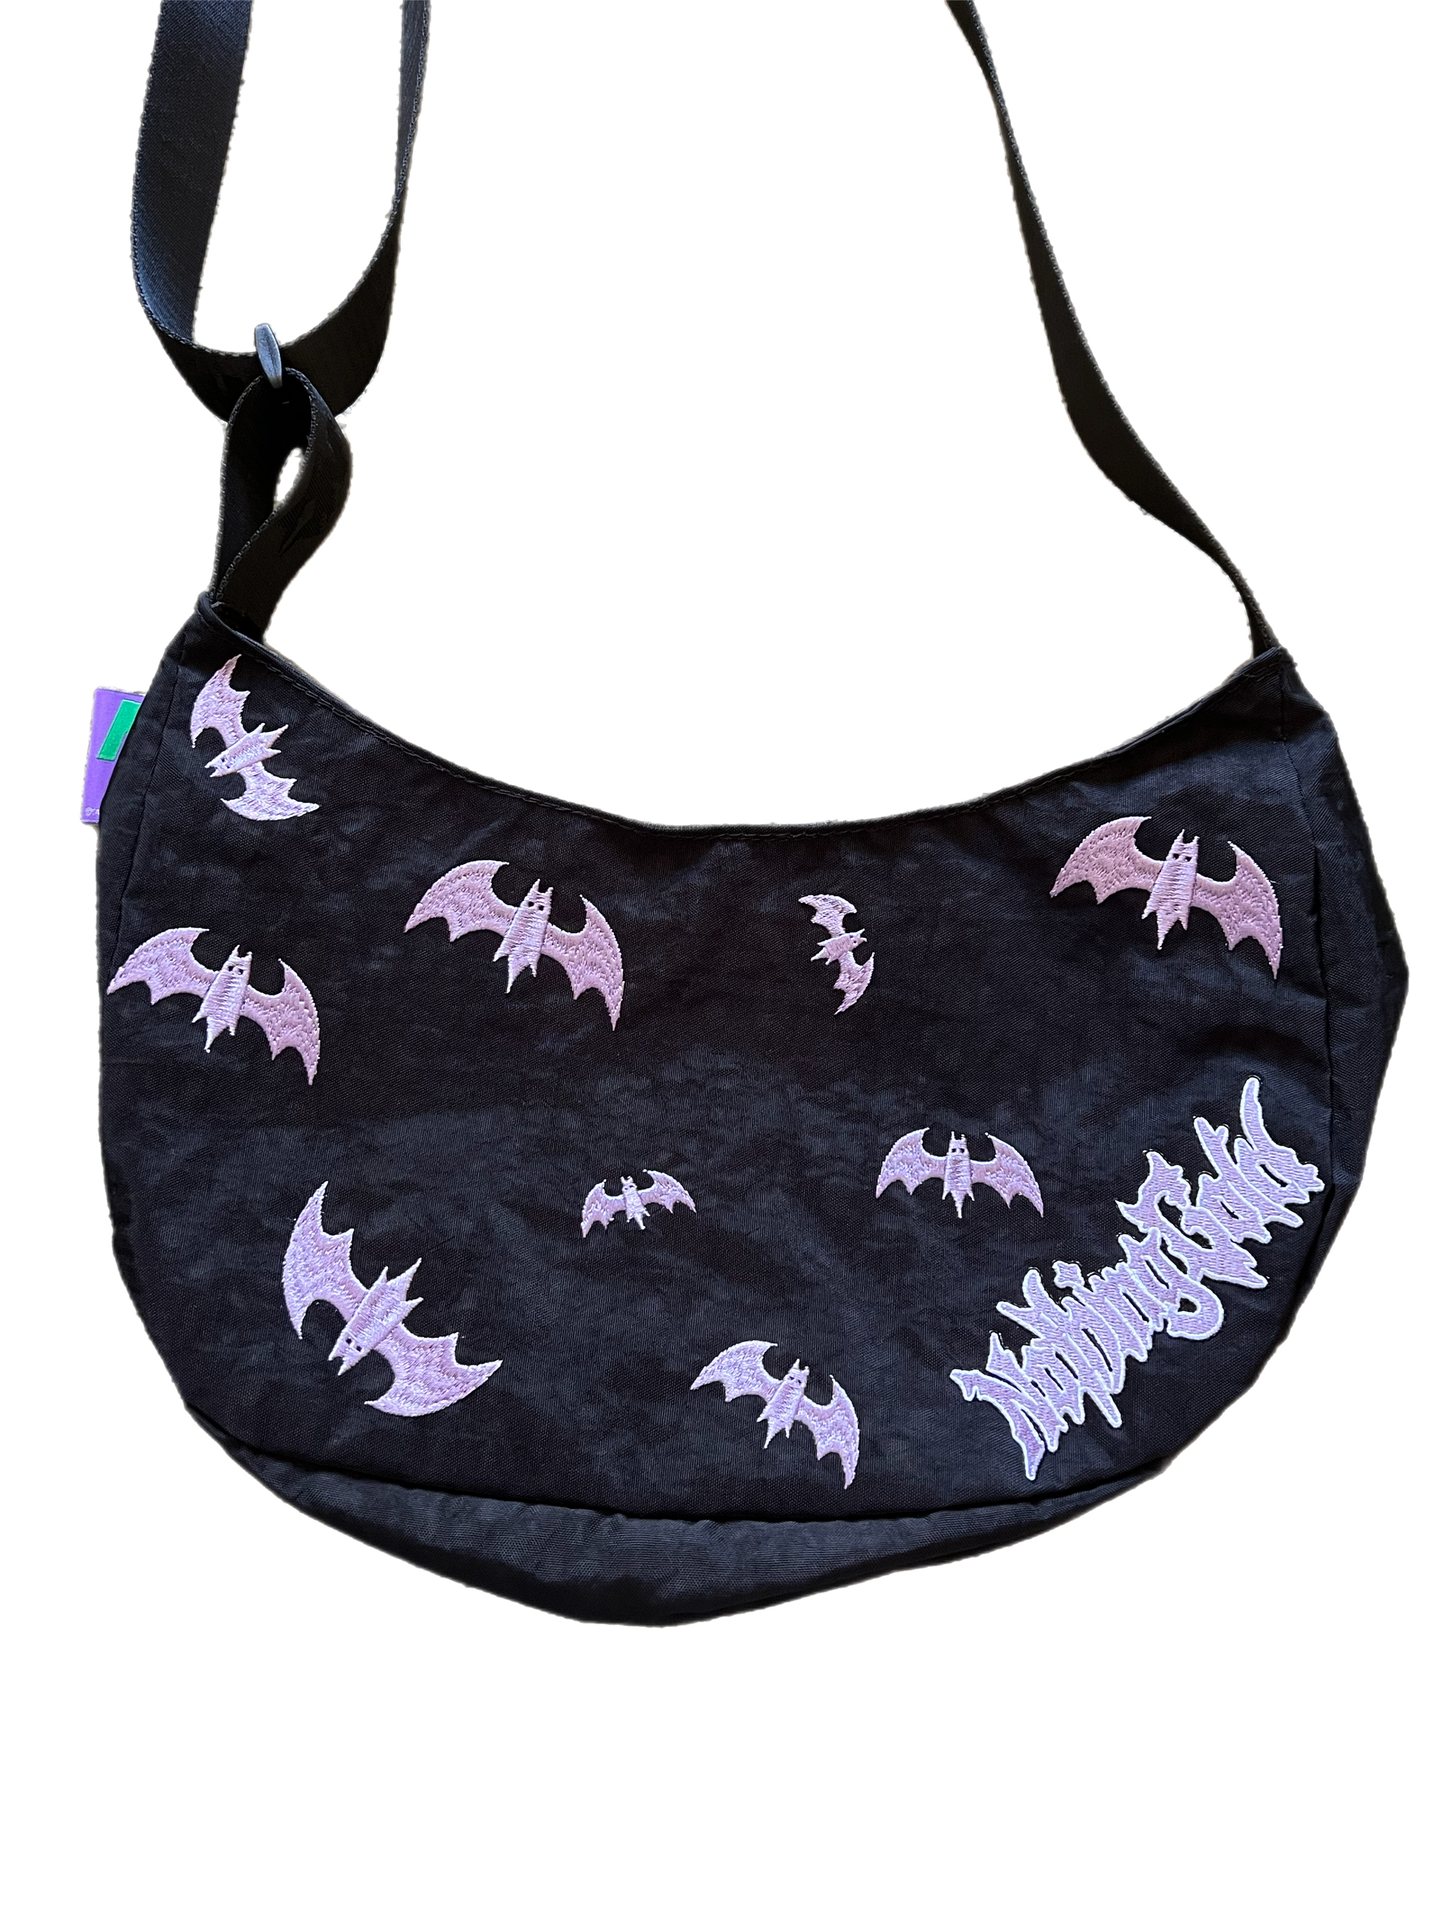 Bat Bag